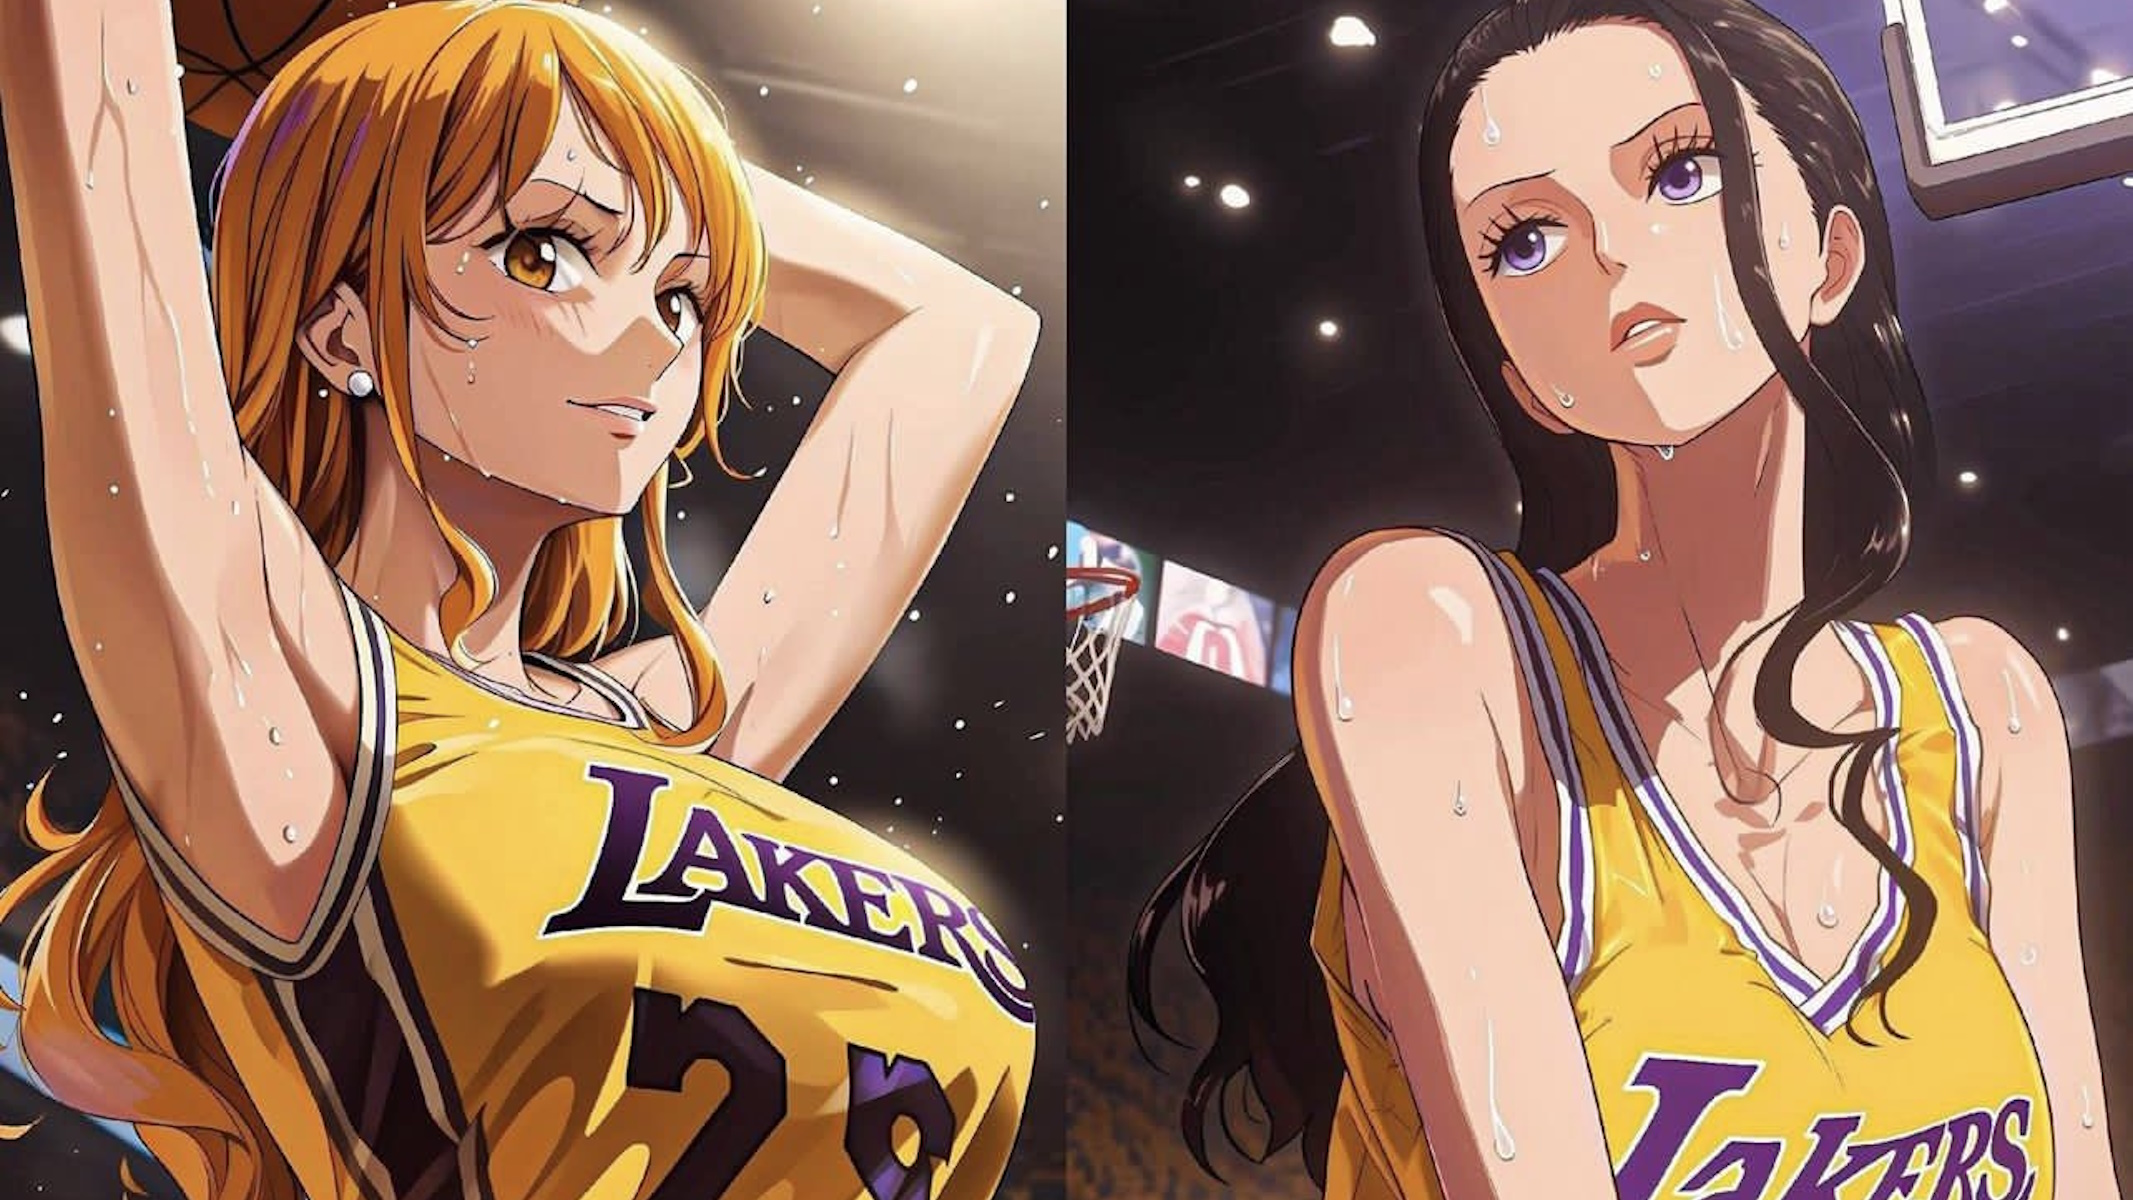 Immagine AI di Nami e Nico Robin di One Piece in versione giocatrici dei Lakers